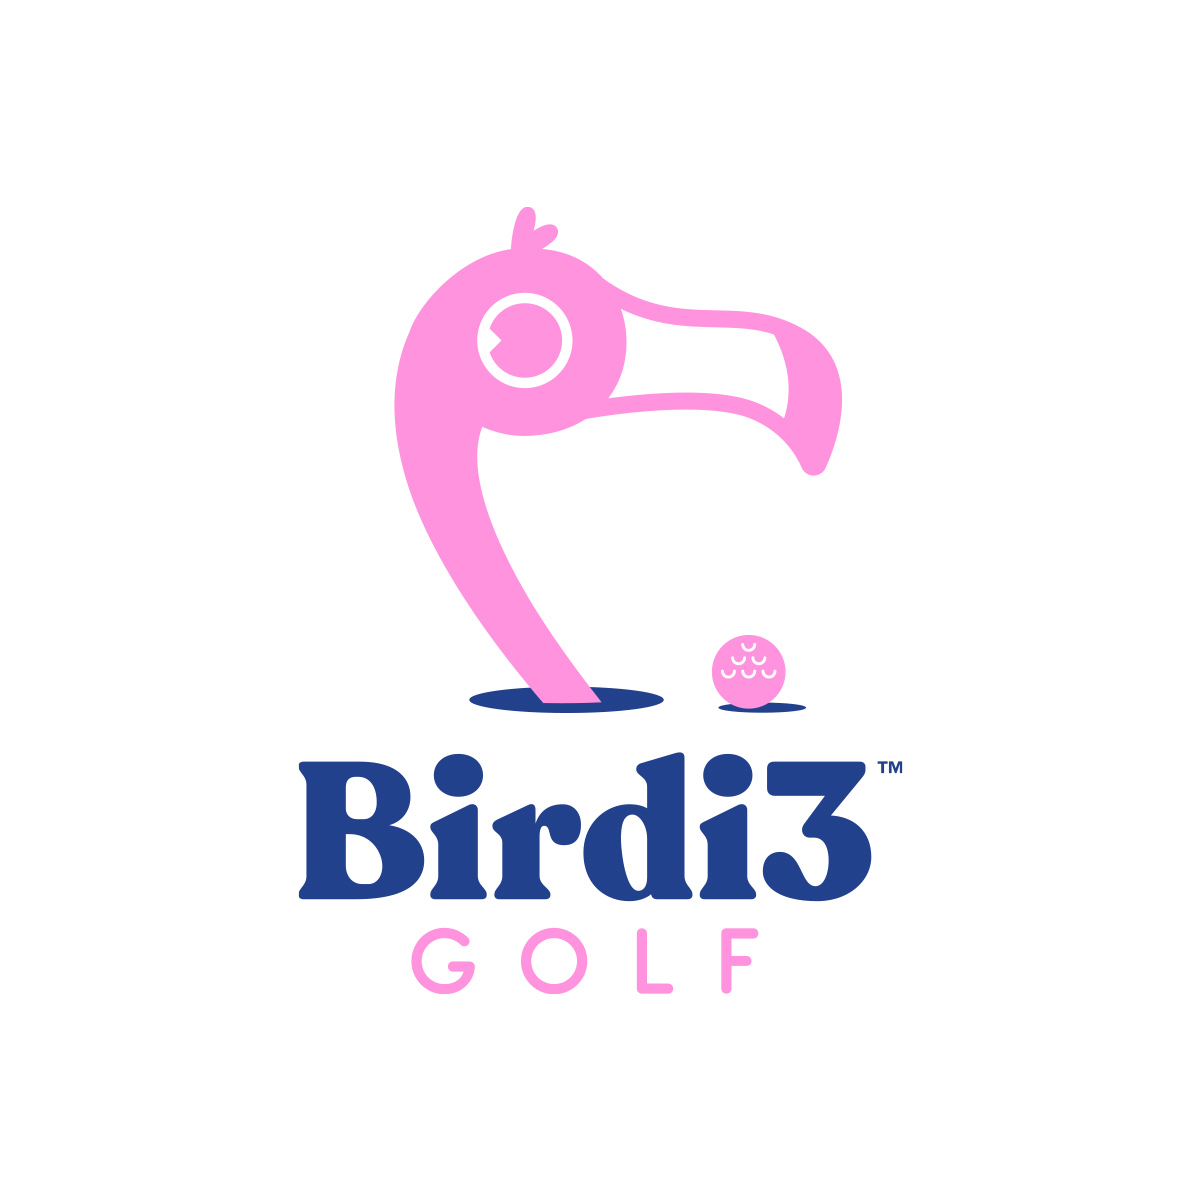 Various-Logos_Birdi